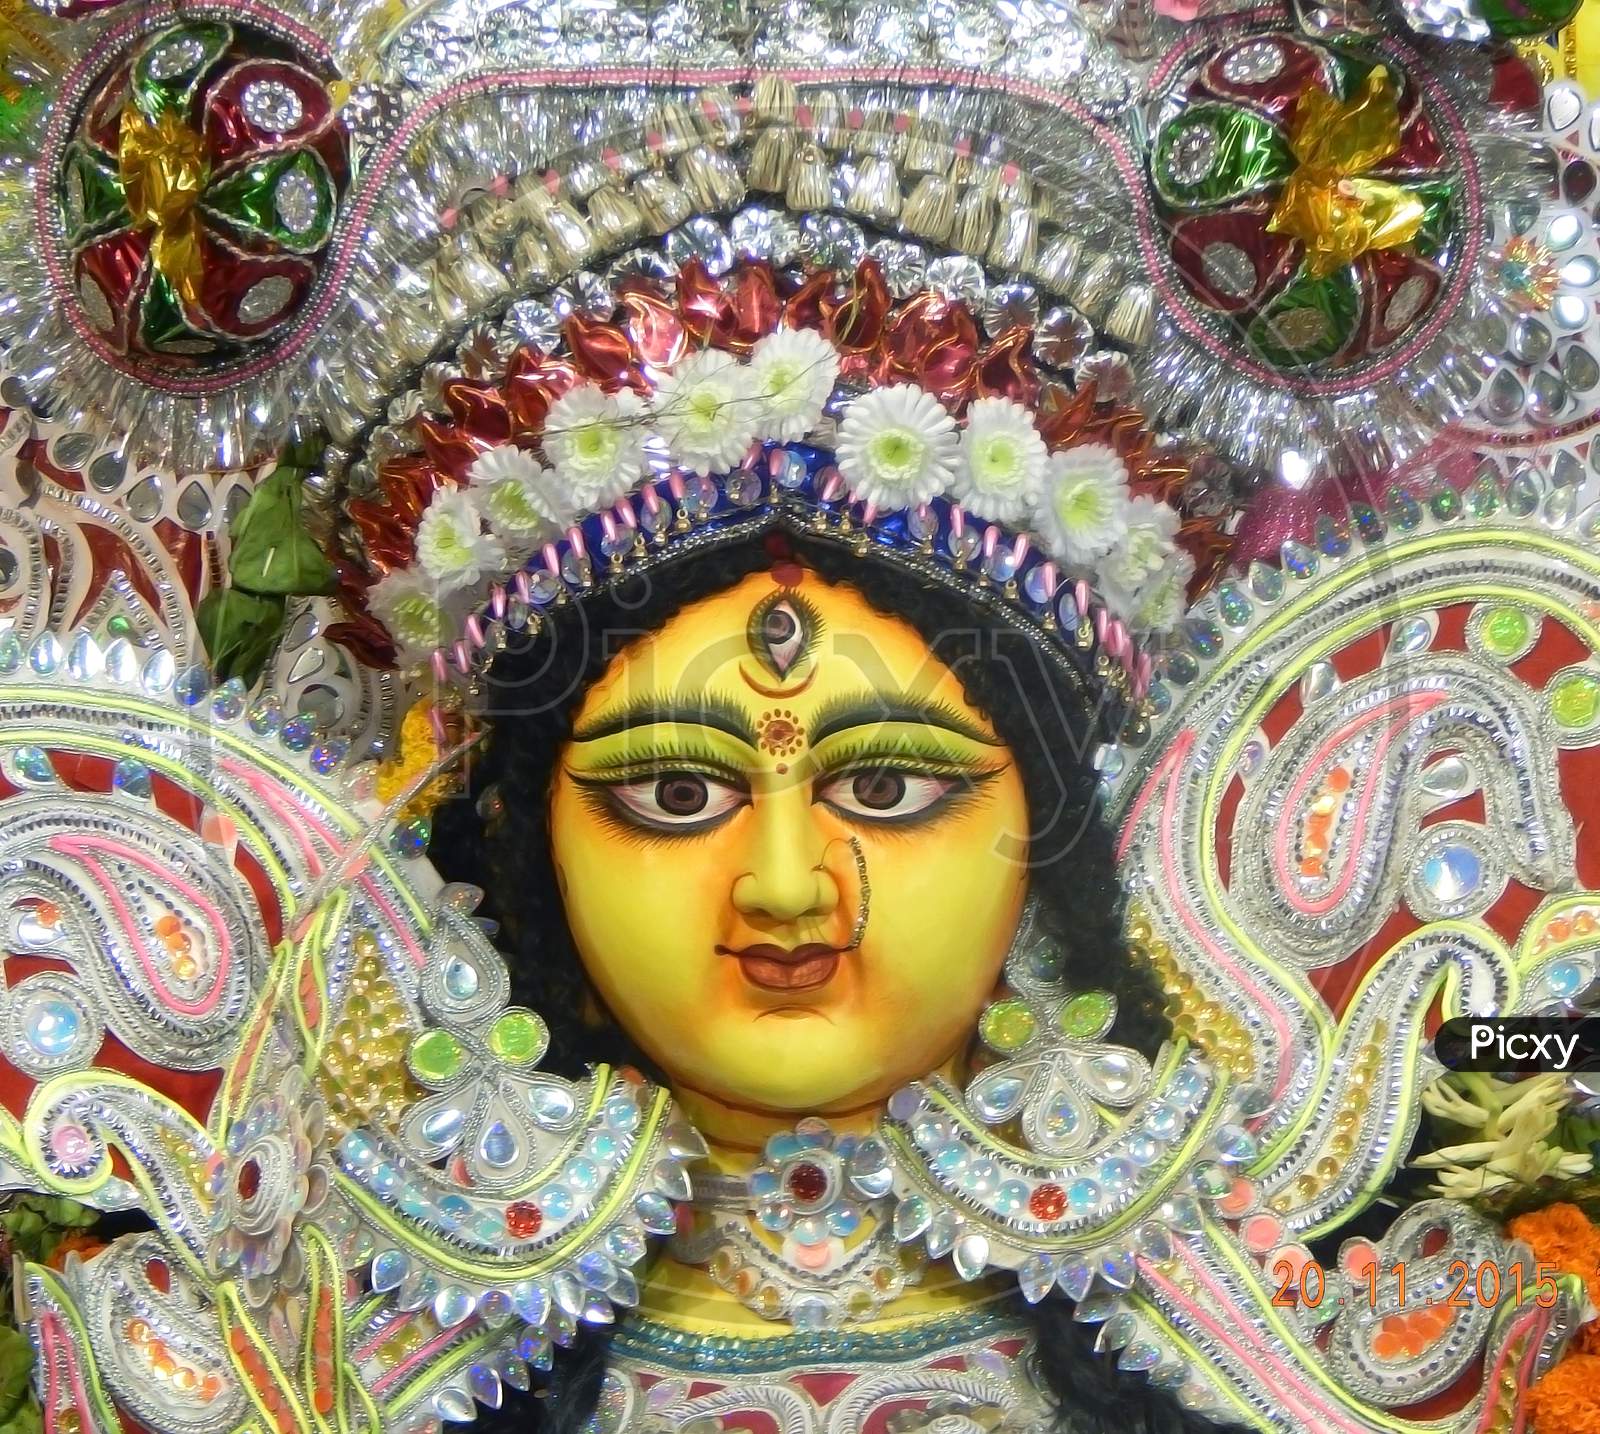 Maa Durga ( God ) image.